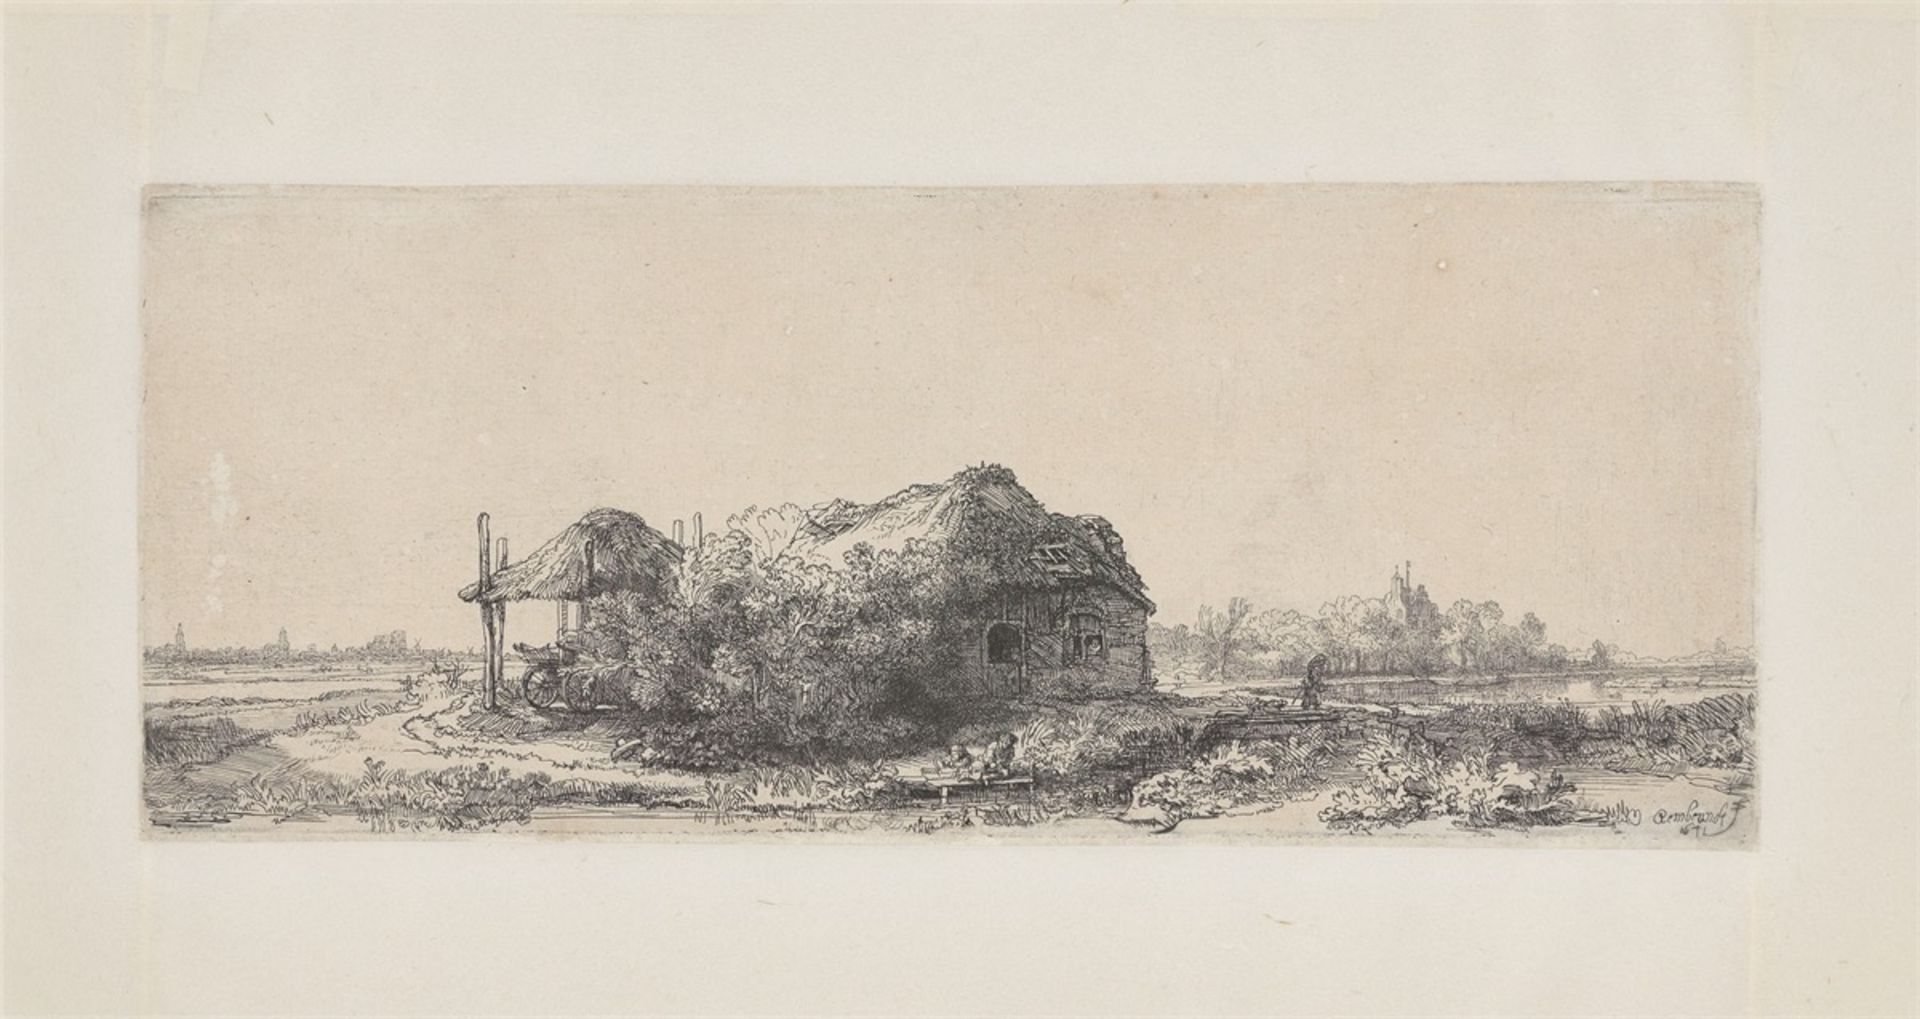 Rembrandt Harmensz. van Rijn. Landschaft mit Hütte und Heuschober. 1641